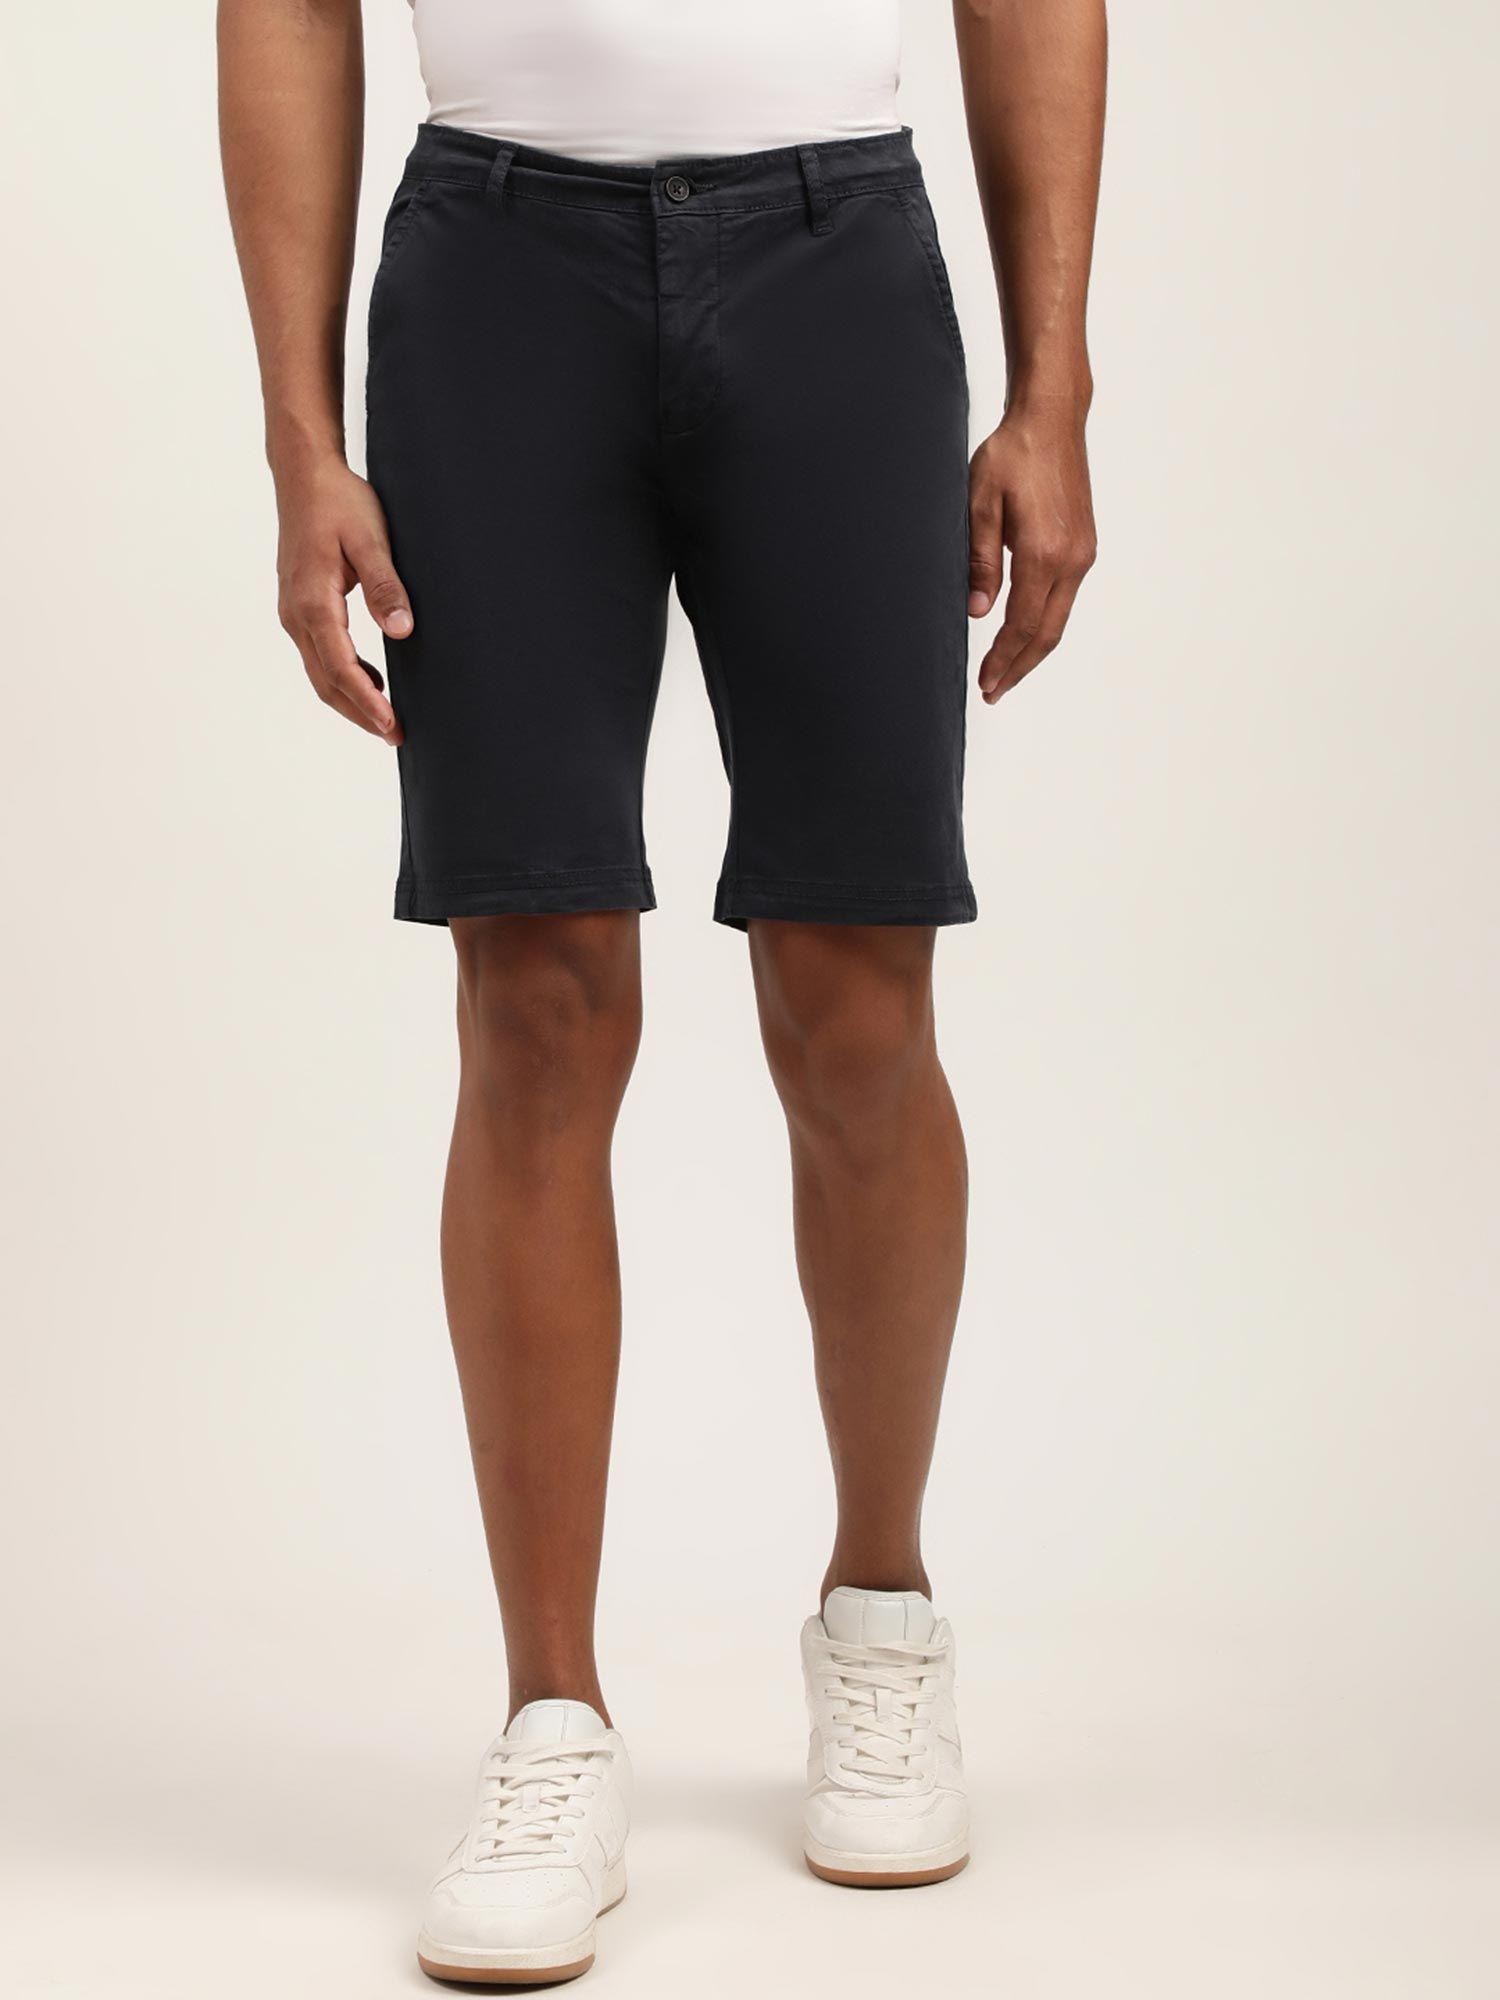 mens solid black regular shorts